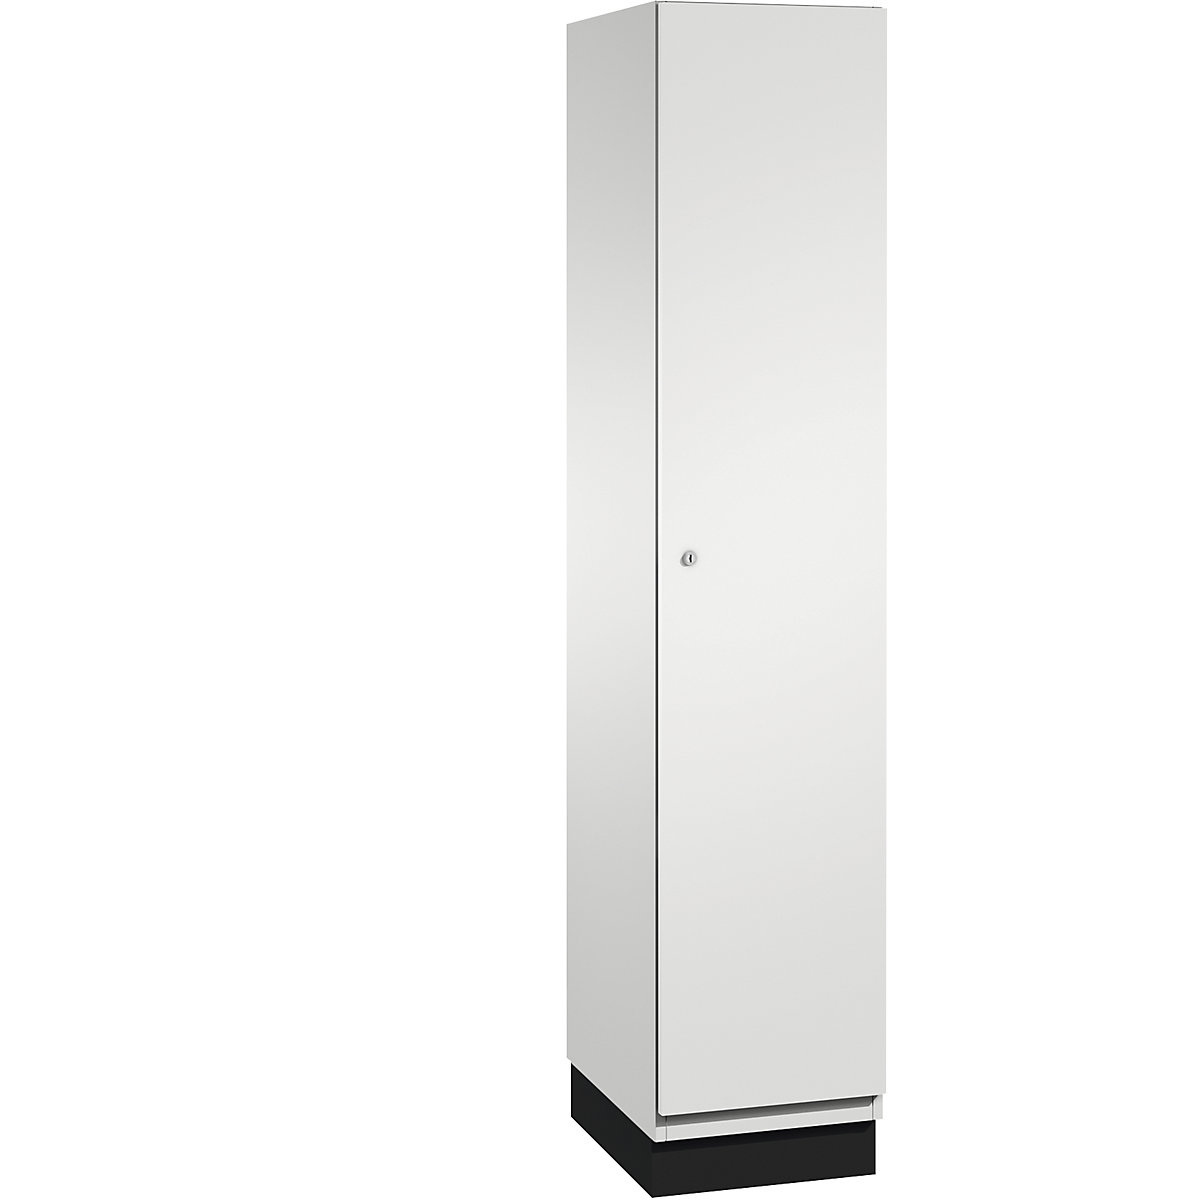 CAMBIO cloakroom locker with sheet steel doors - C+P